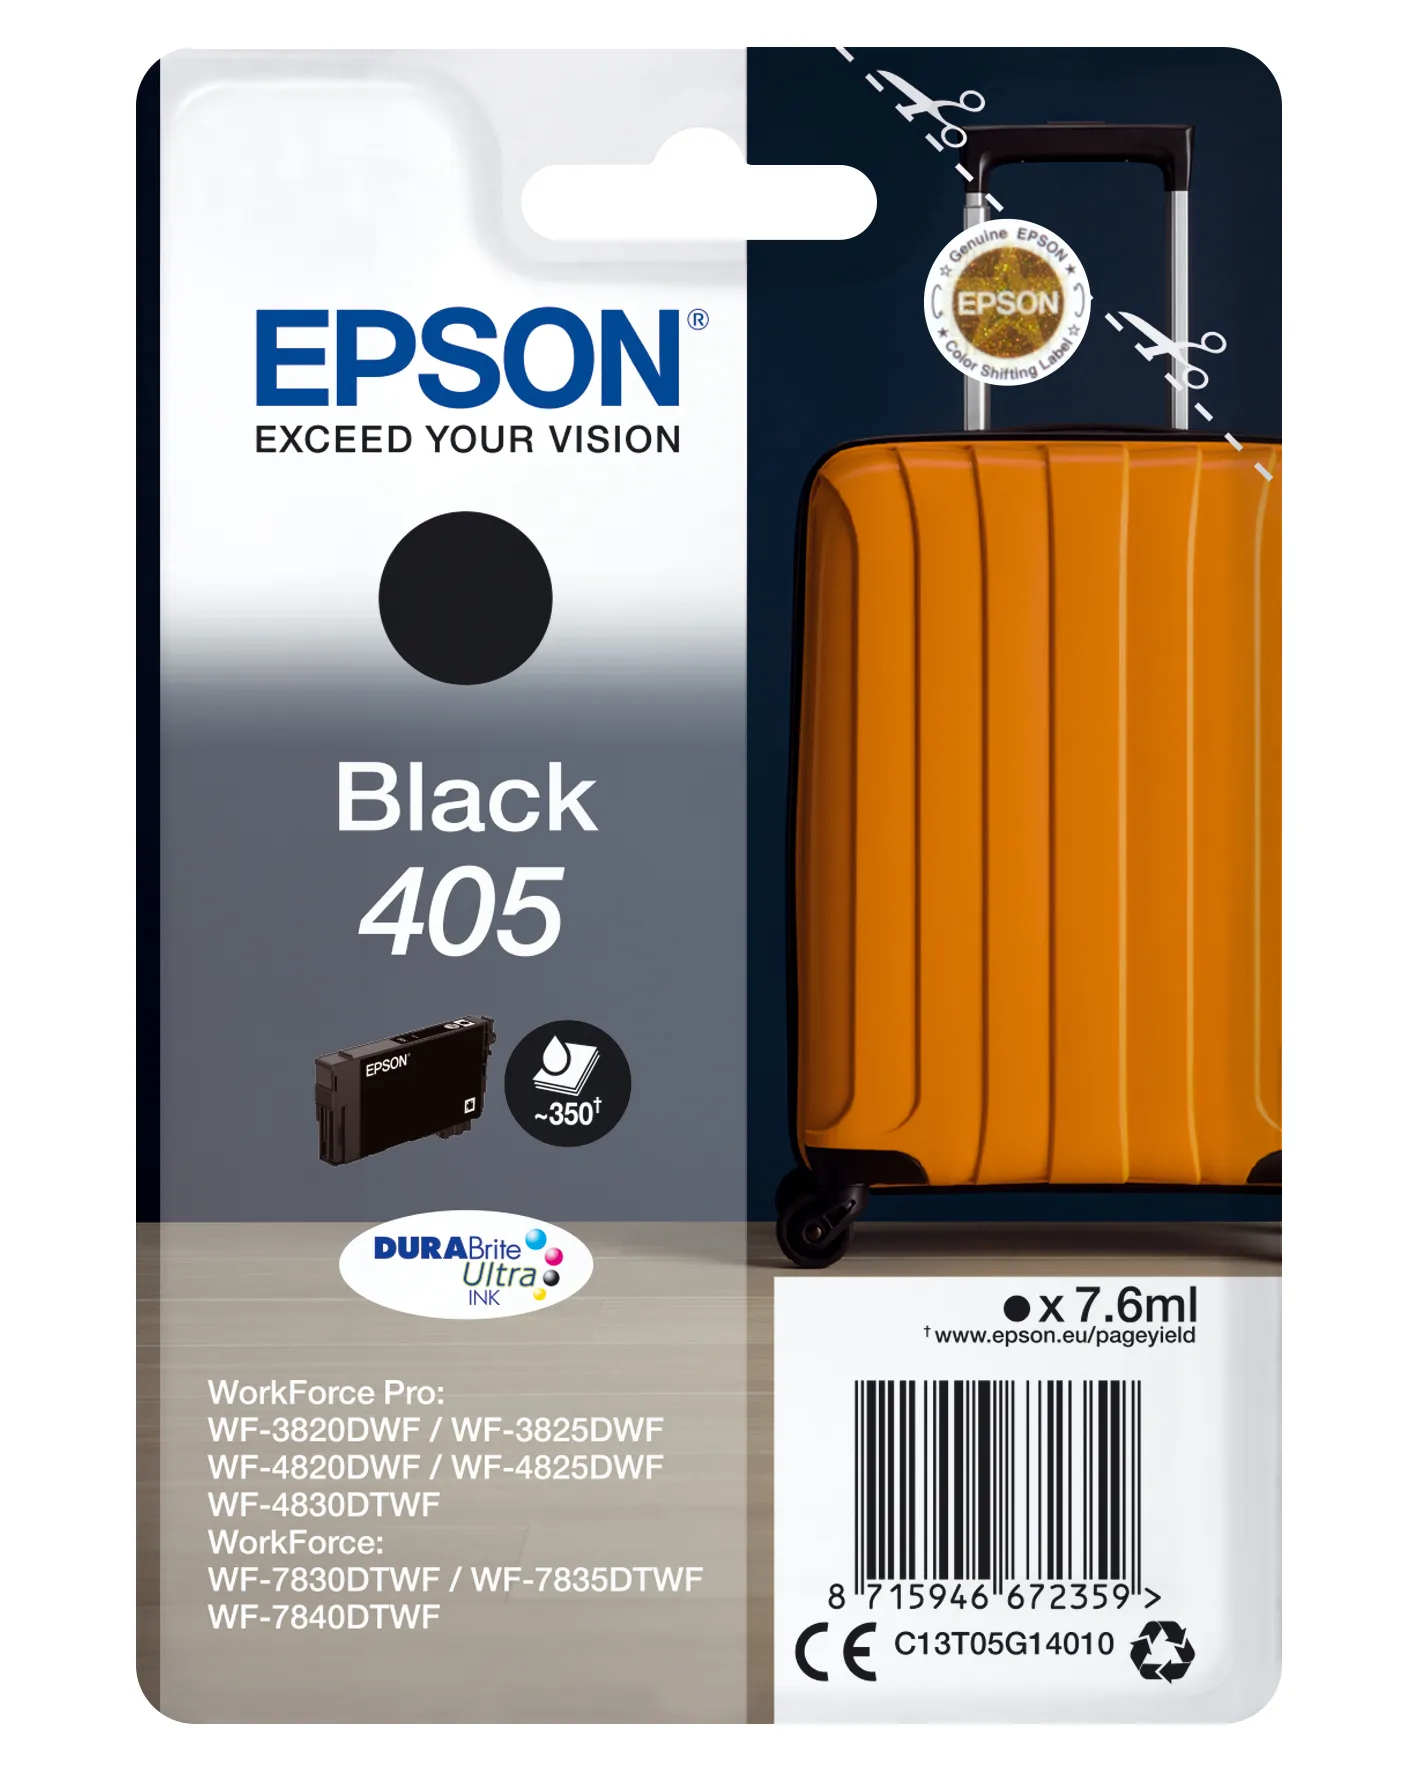 Achat EPSON Singlepack Black 405 DURABrite Ultra Ink sur hello RSE - visuel 3